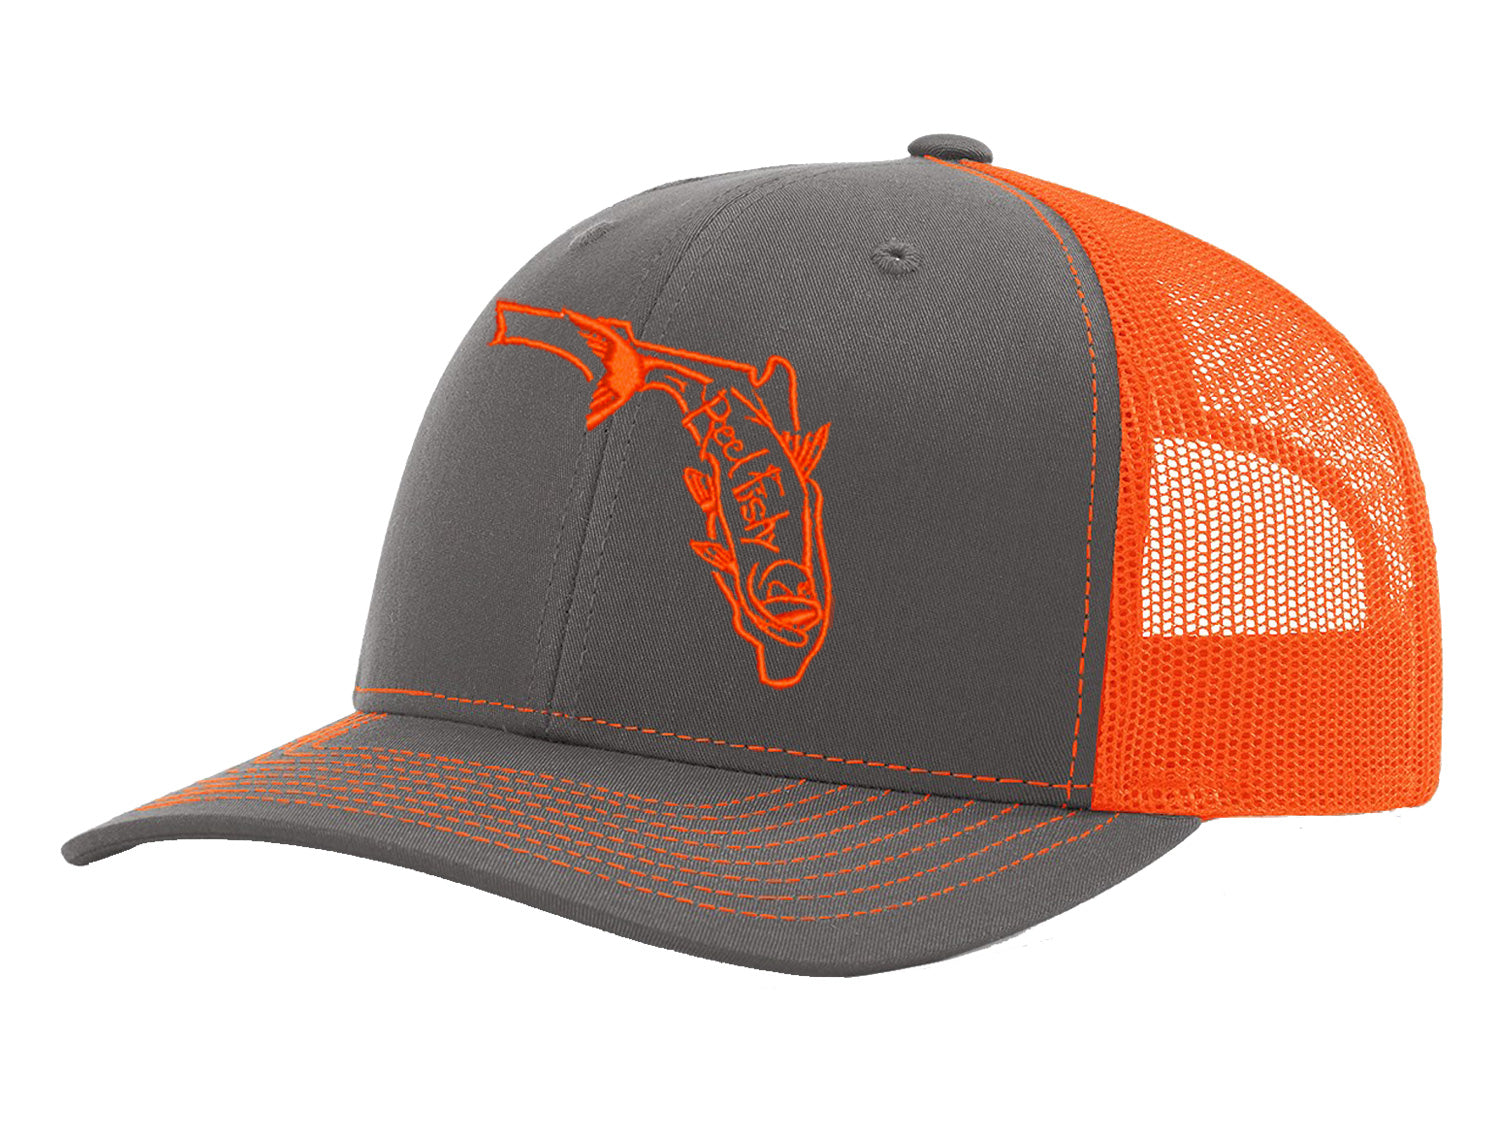 State of Florida Tarpon Reel Fishy Logo - Charcoal/Orange Trucker hat w/Orange Logo